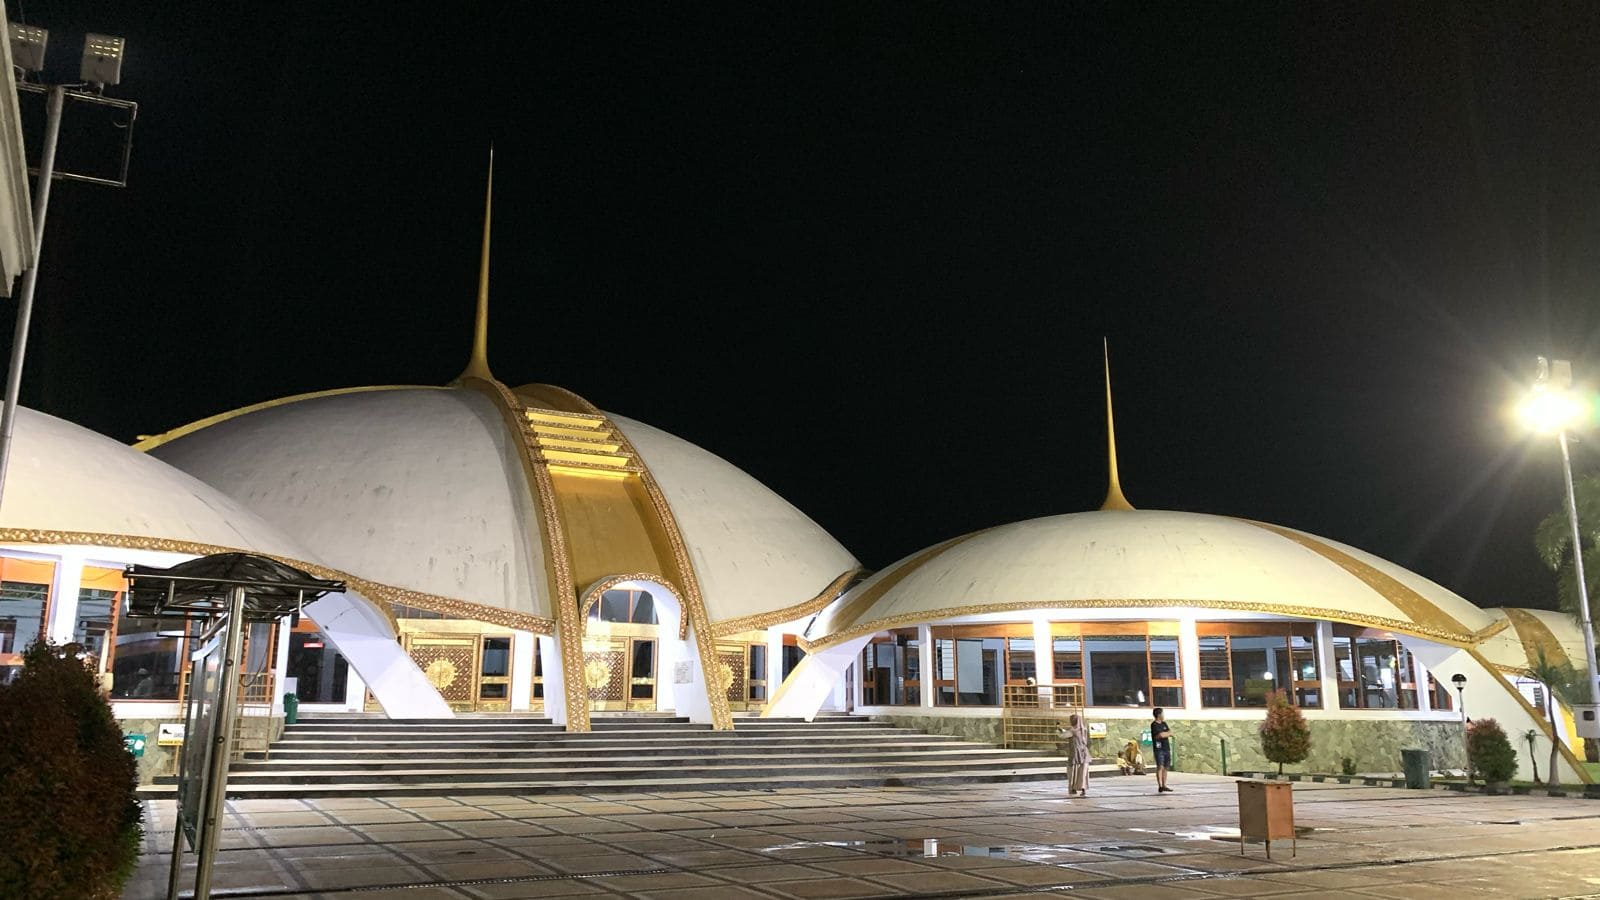 Wisata religi di Jember Masjid Jami’ Al Baitul Amien.